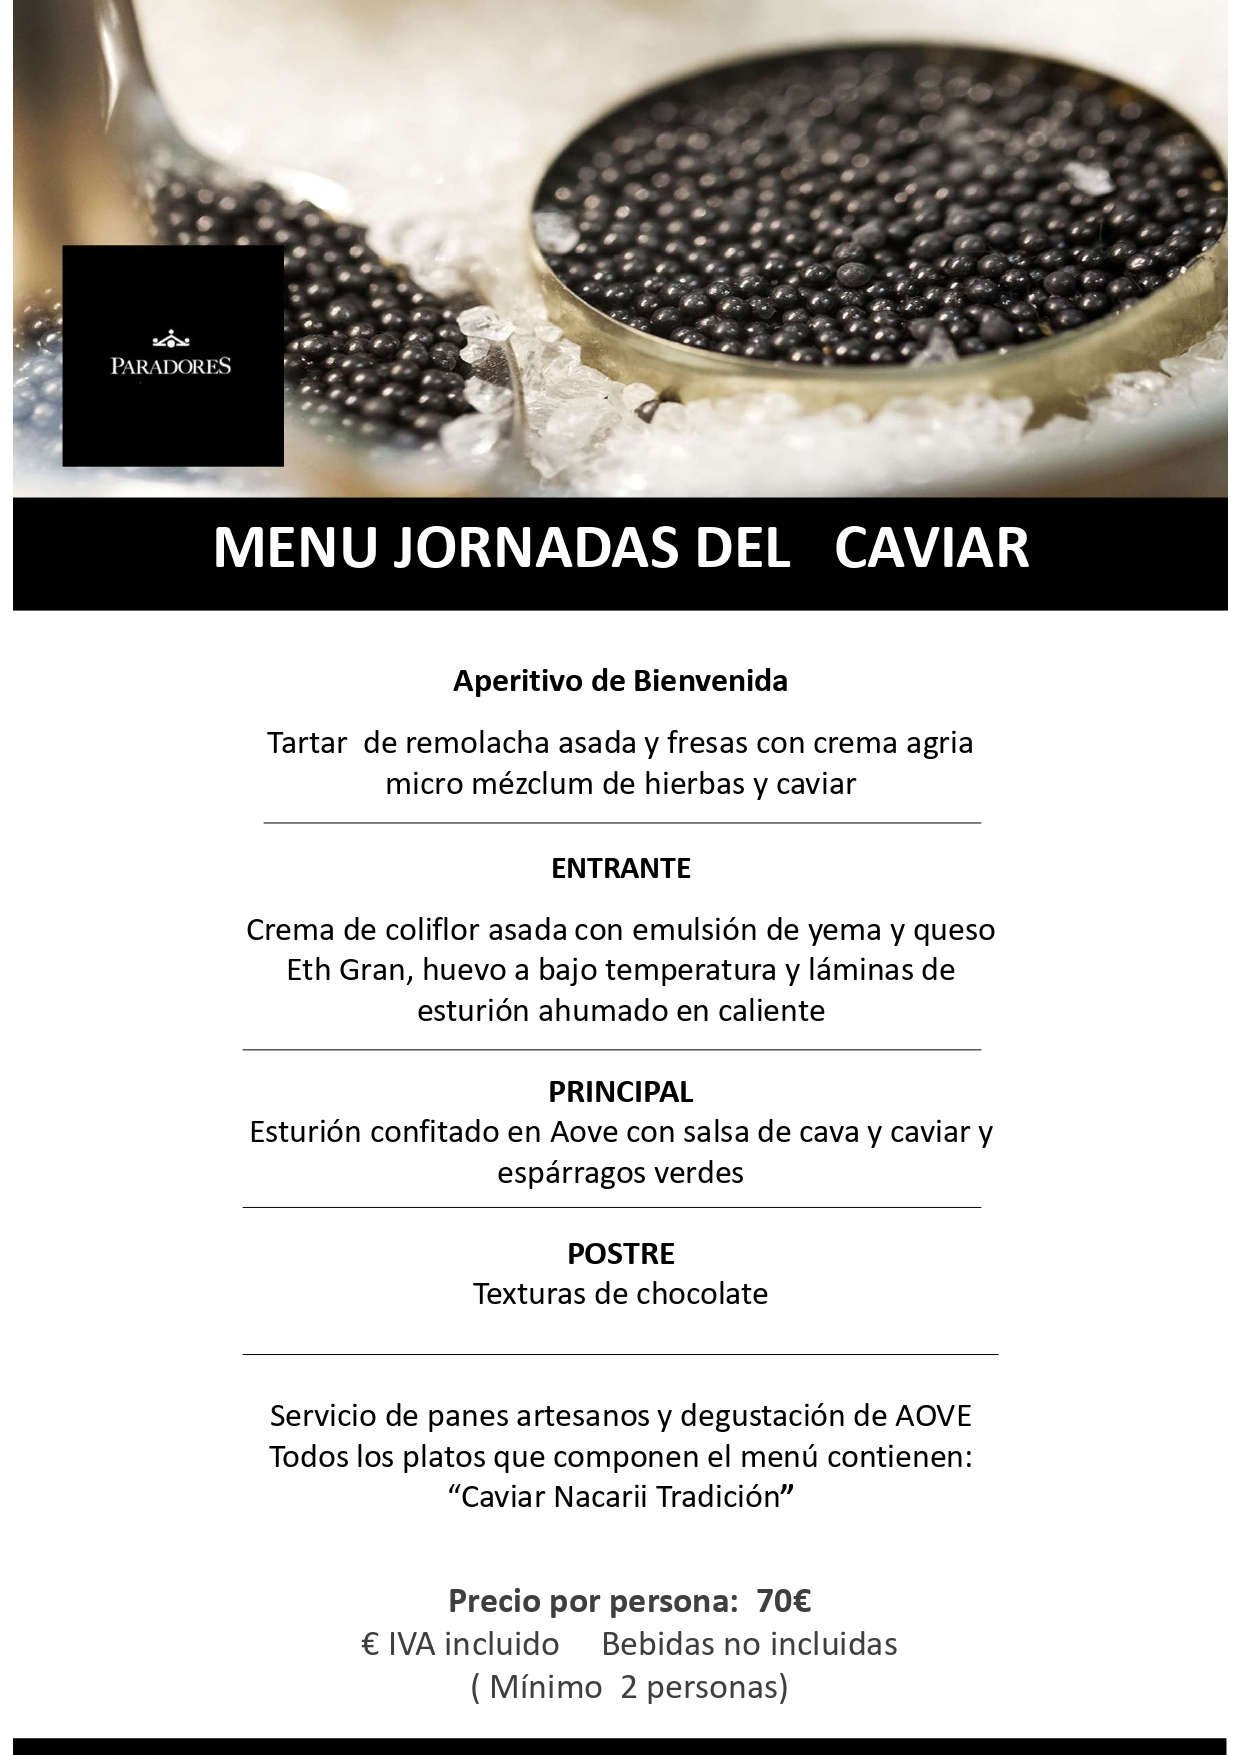 Menú del caviar